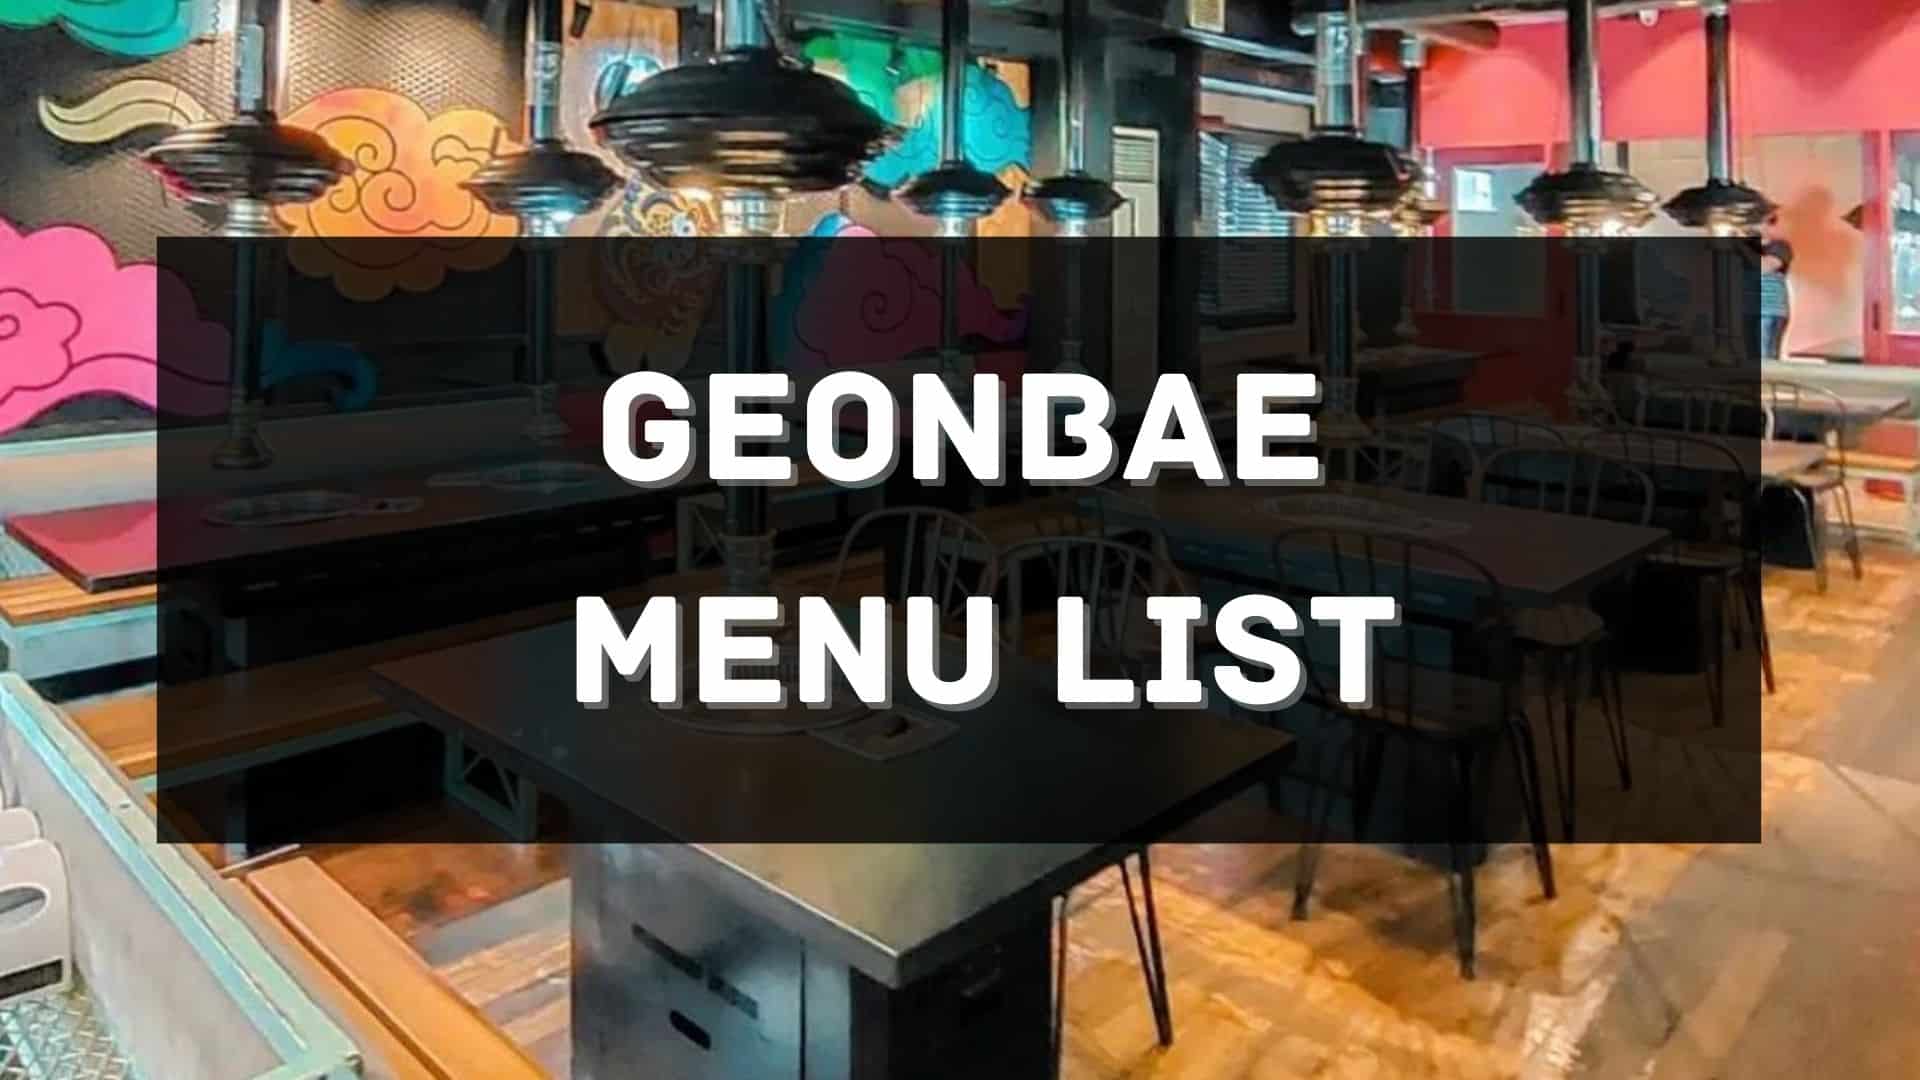 geonbae menu prices philippines